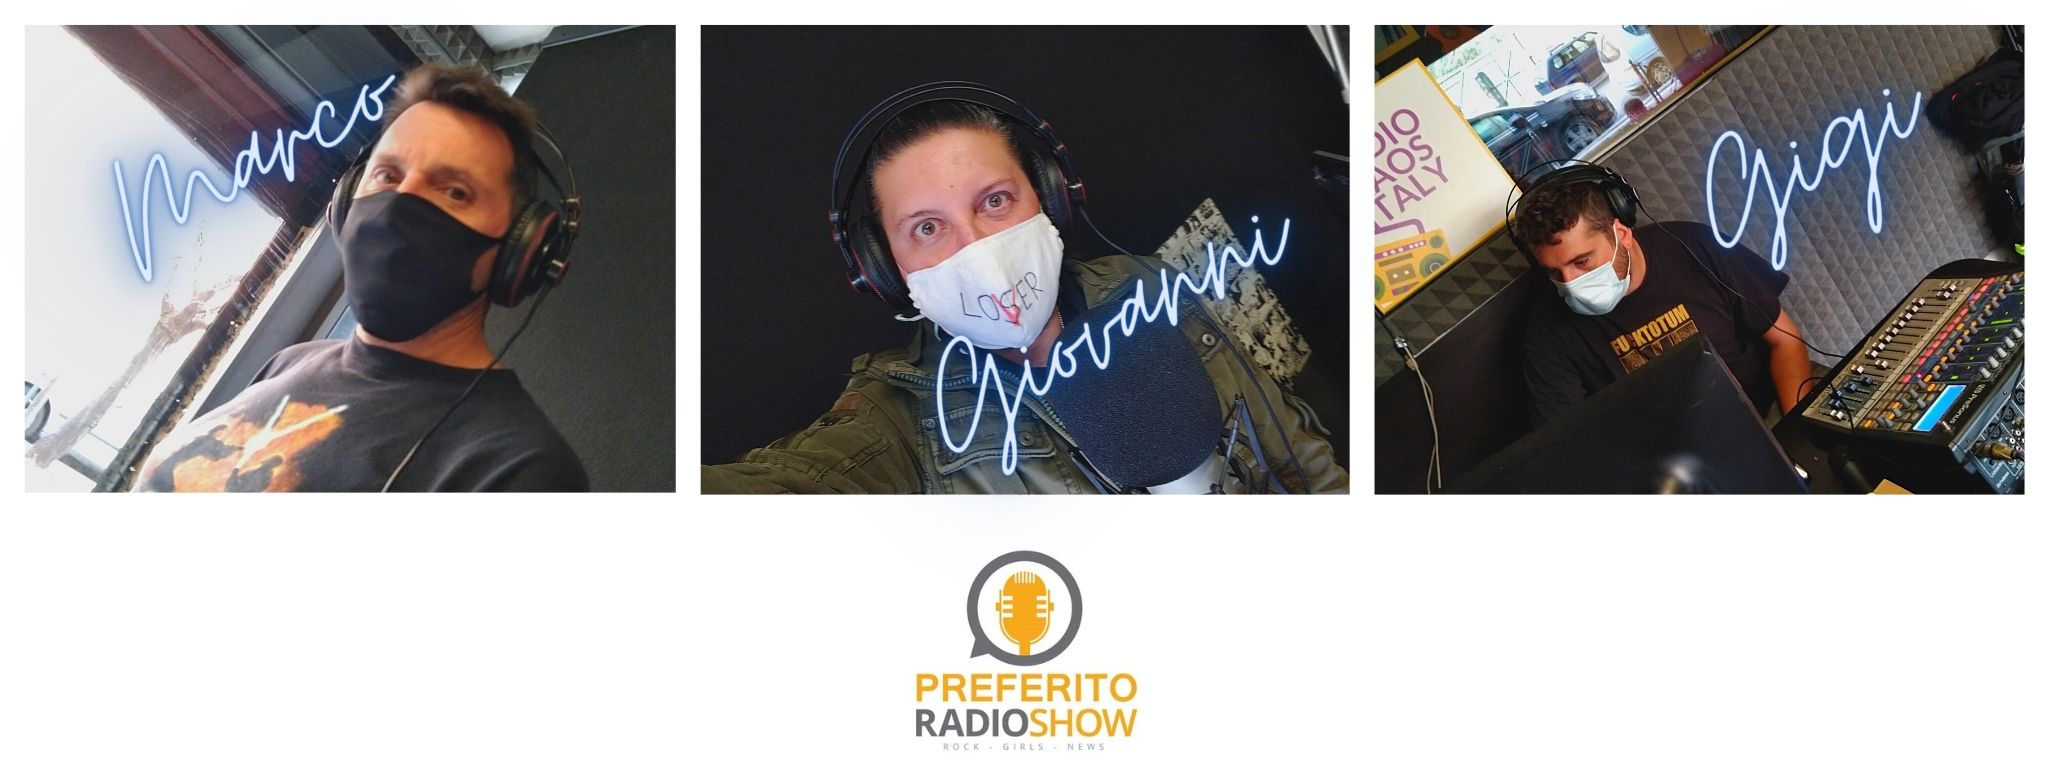 Podcast. Preferito Radio Show 06 Ottobre 2020: ospite il cantautore Antonio Riccardi